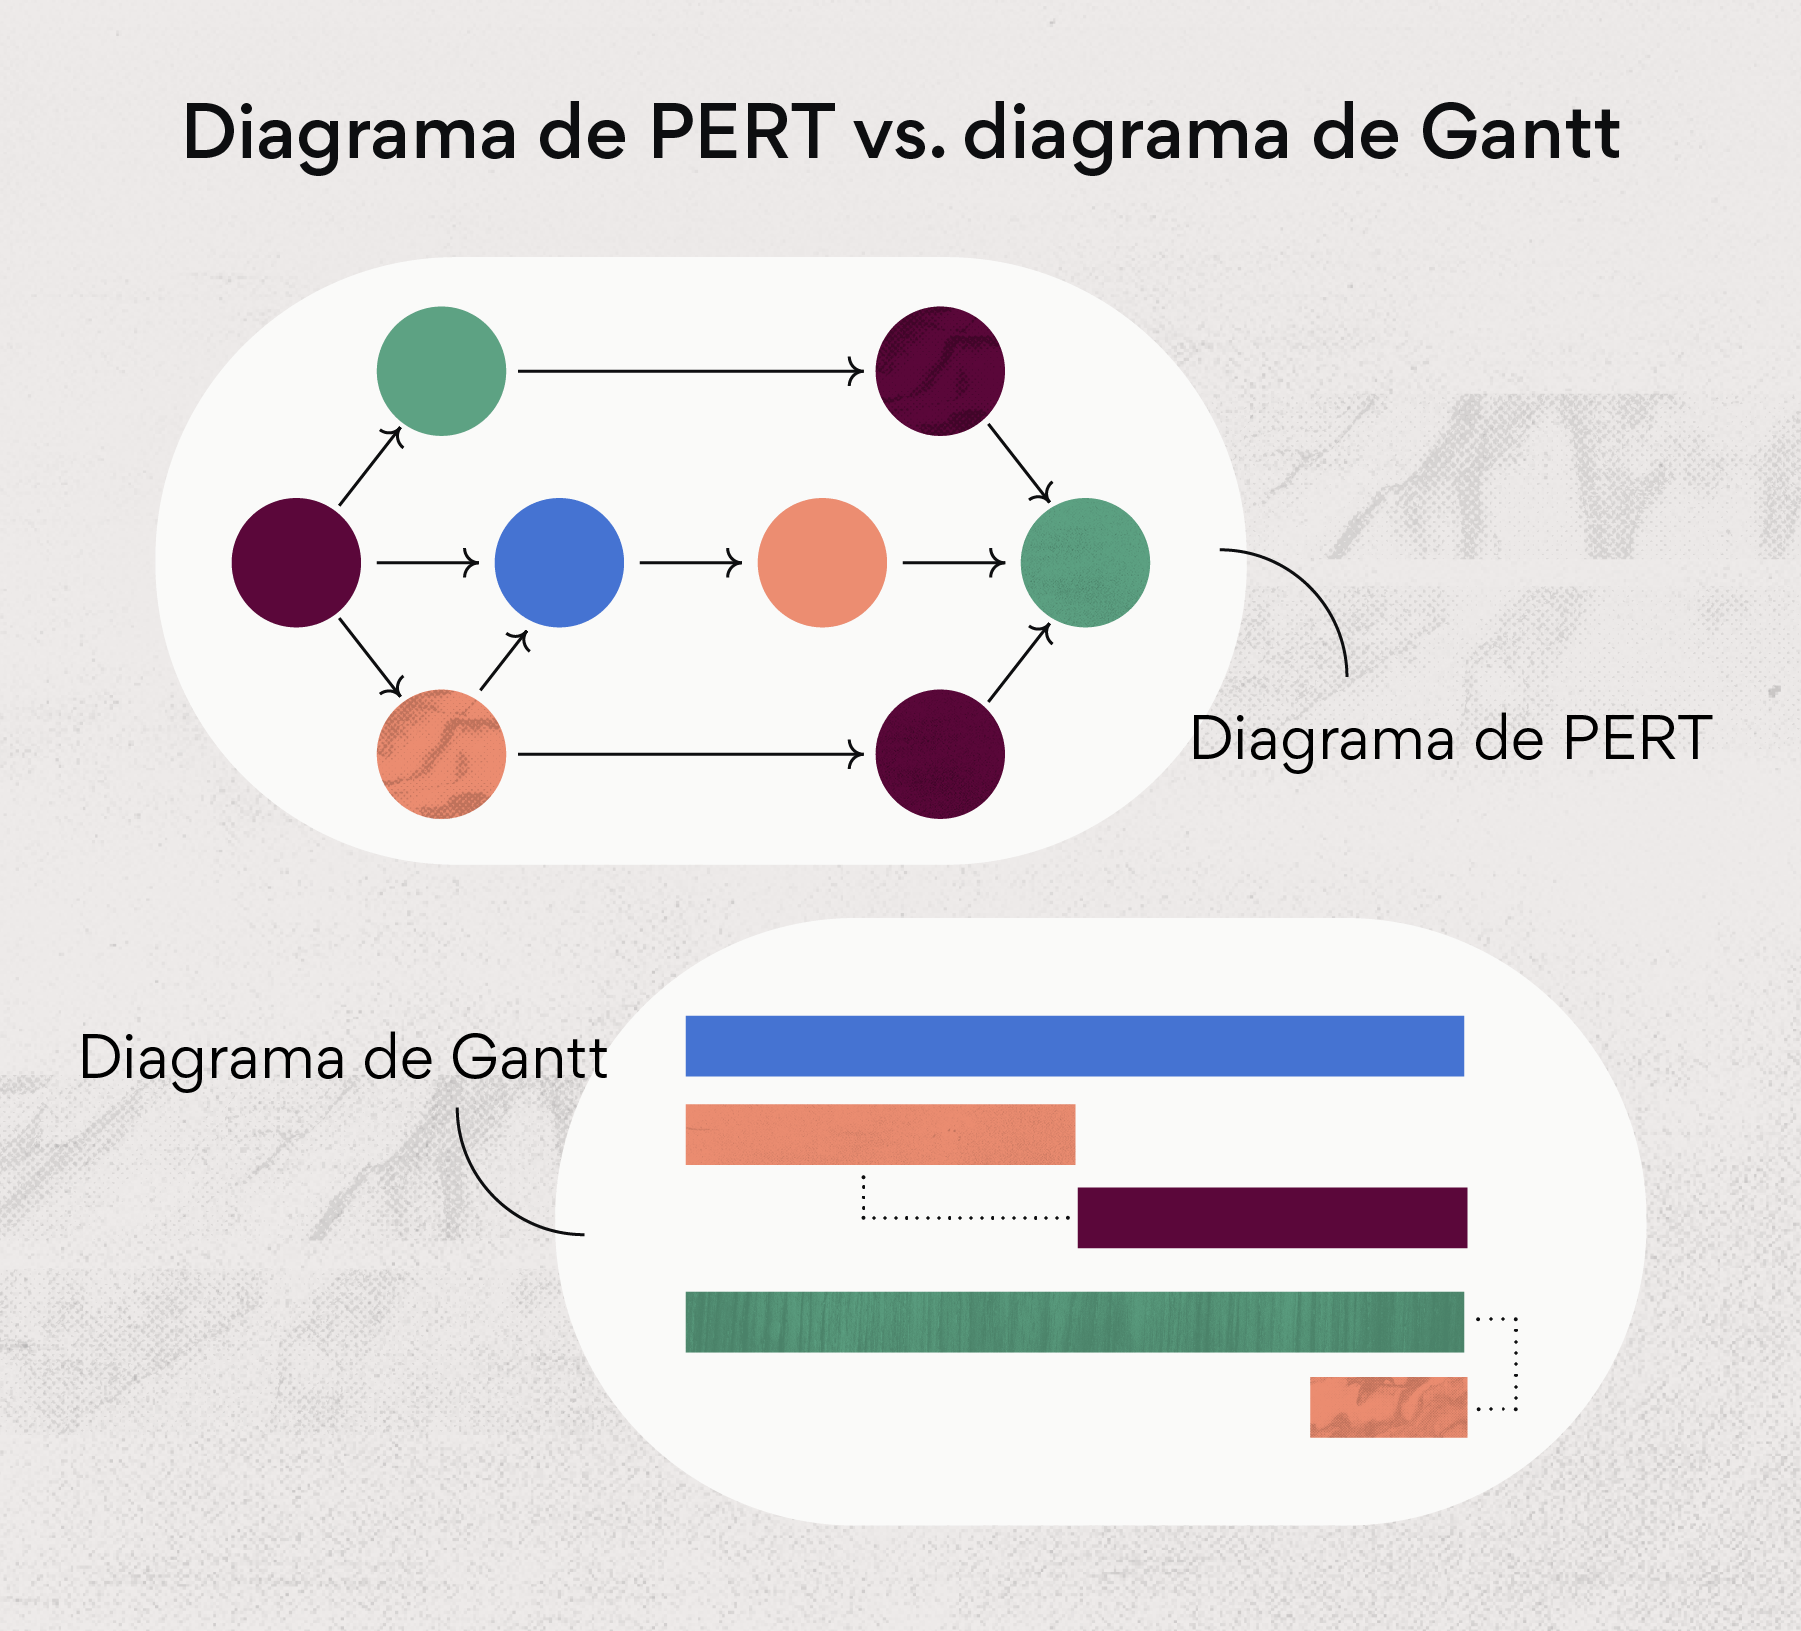 Diagrama de PERT vs. diagrama de Gantt